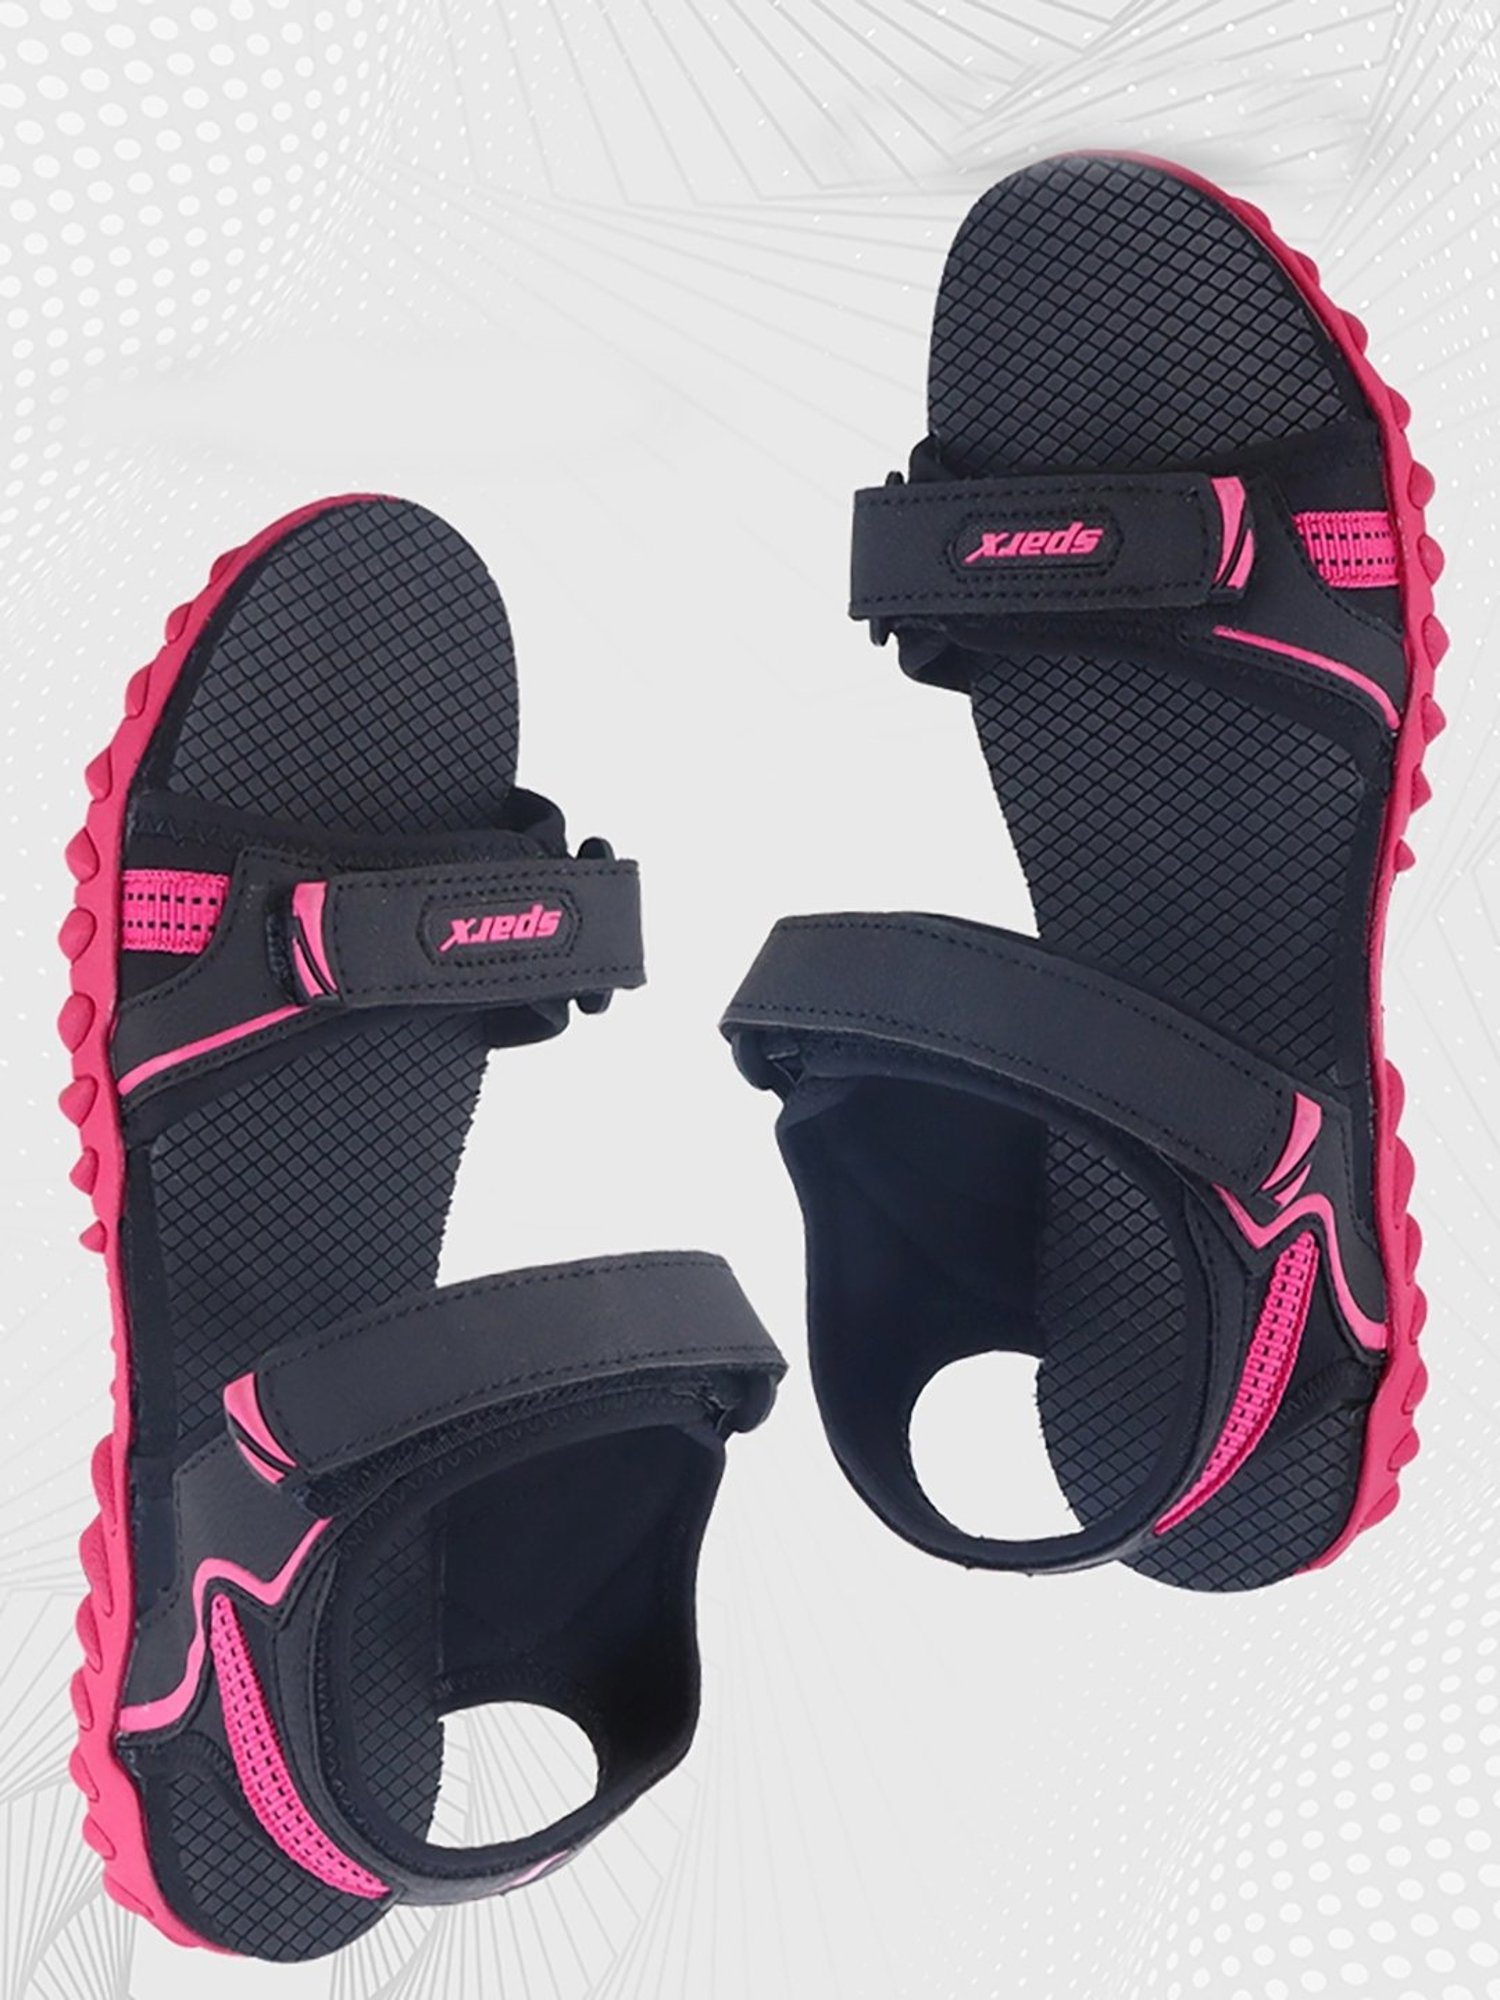 Buy Sandals for women SS 594 - Sandals Slippers for Women | Relaxo